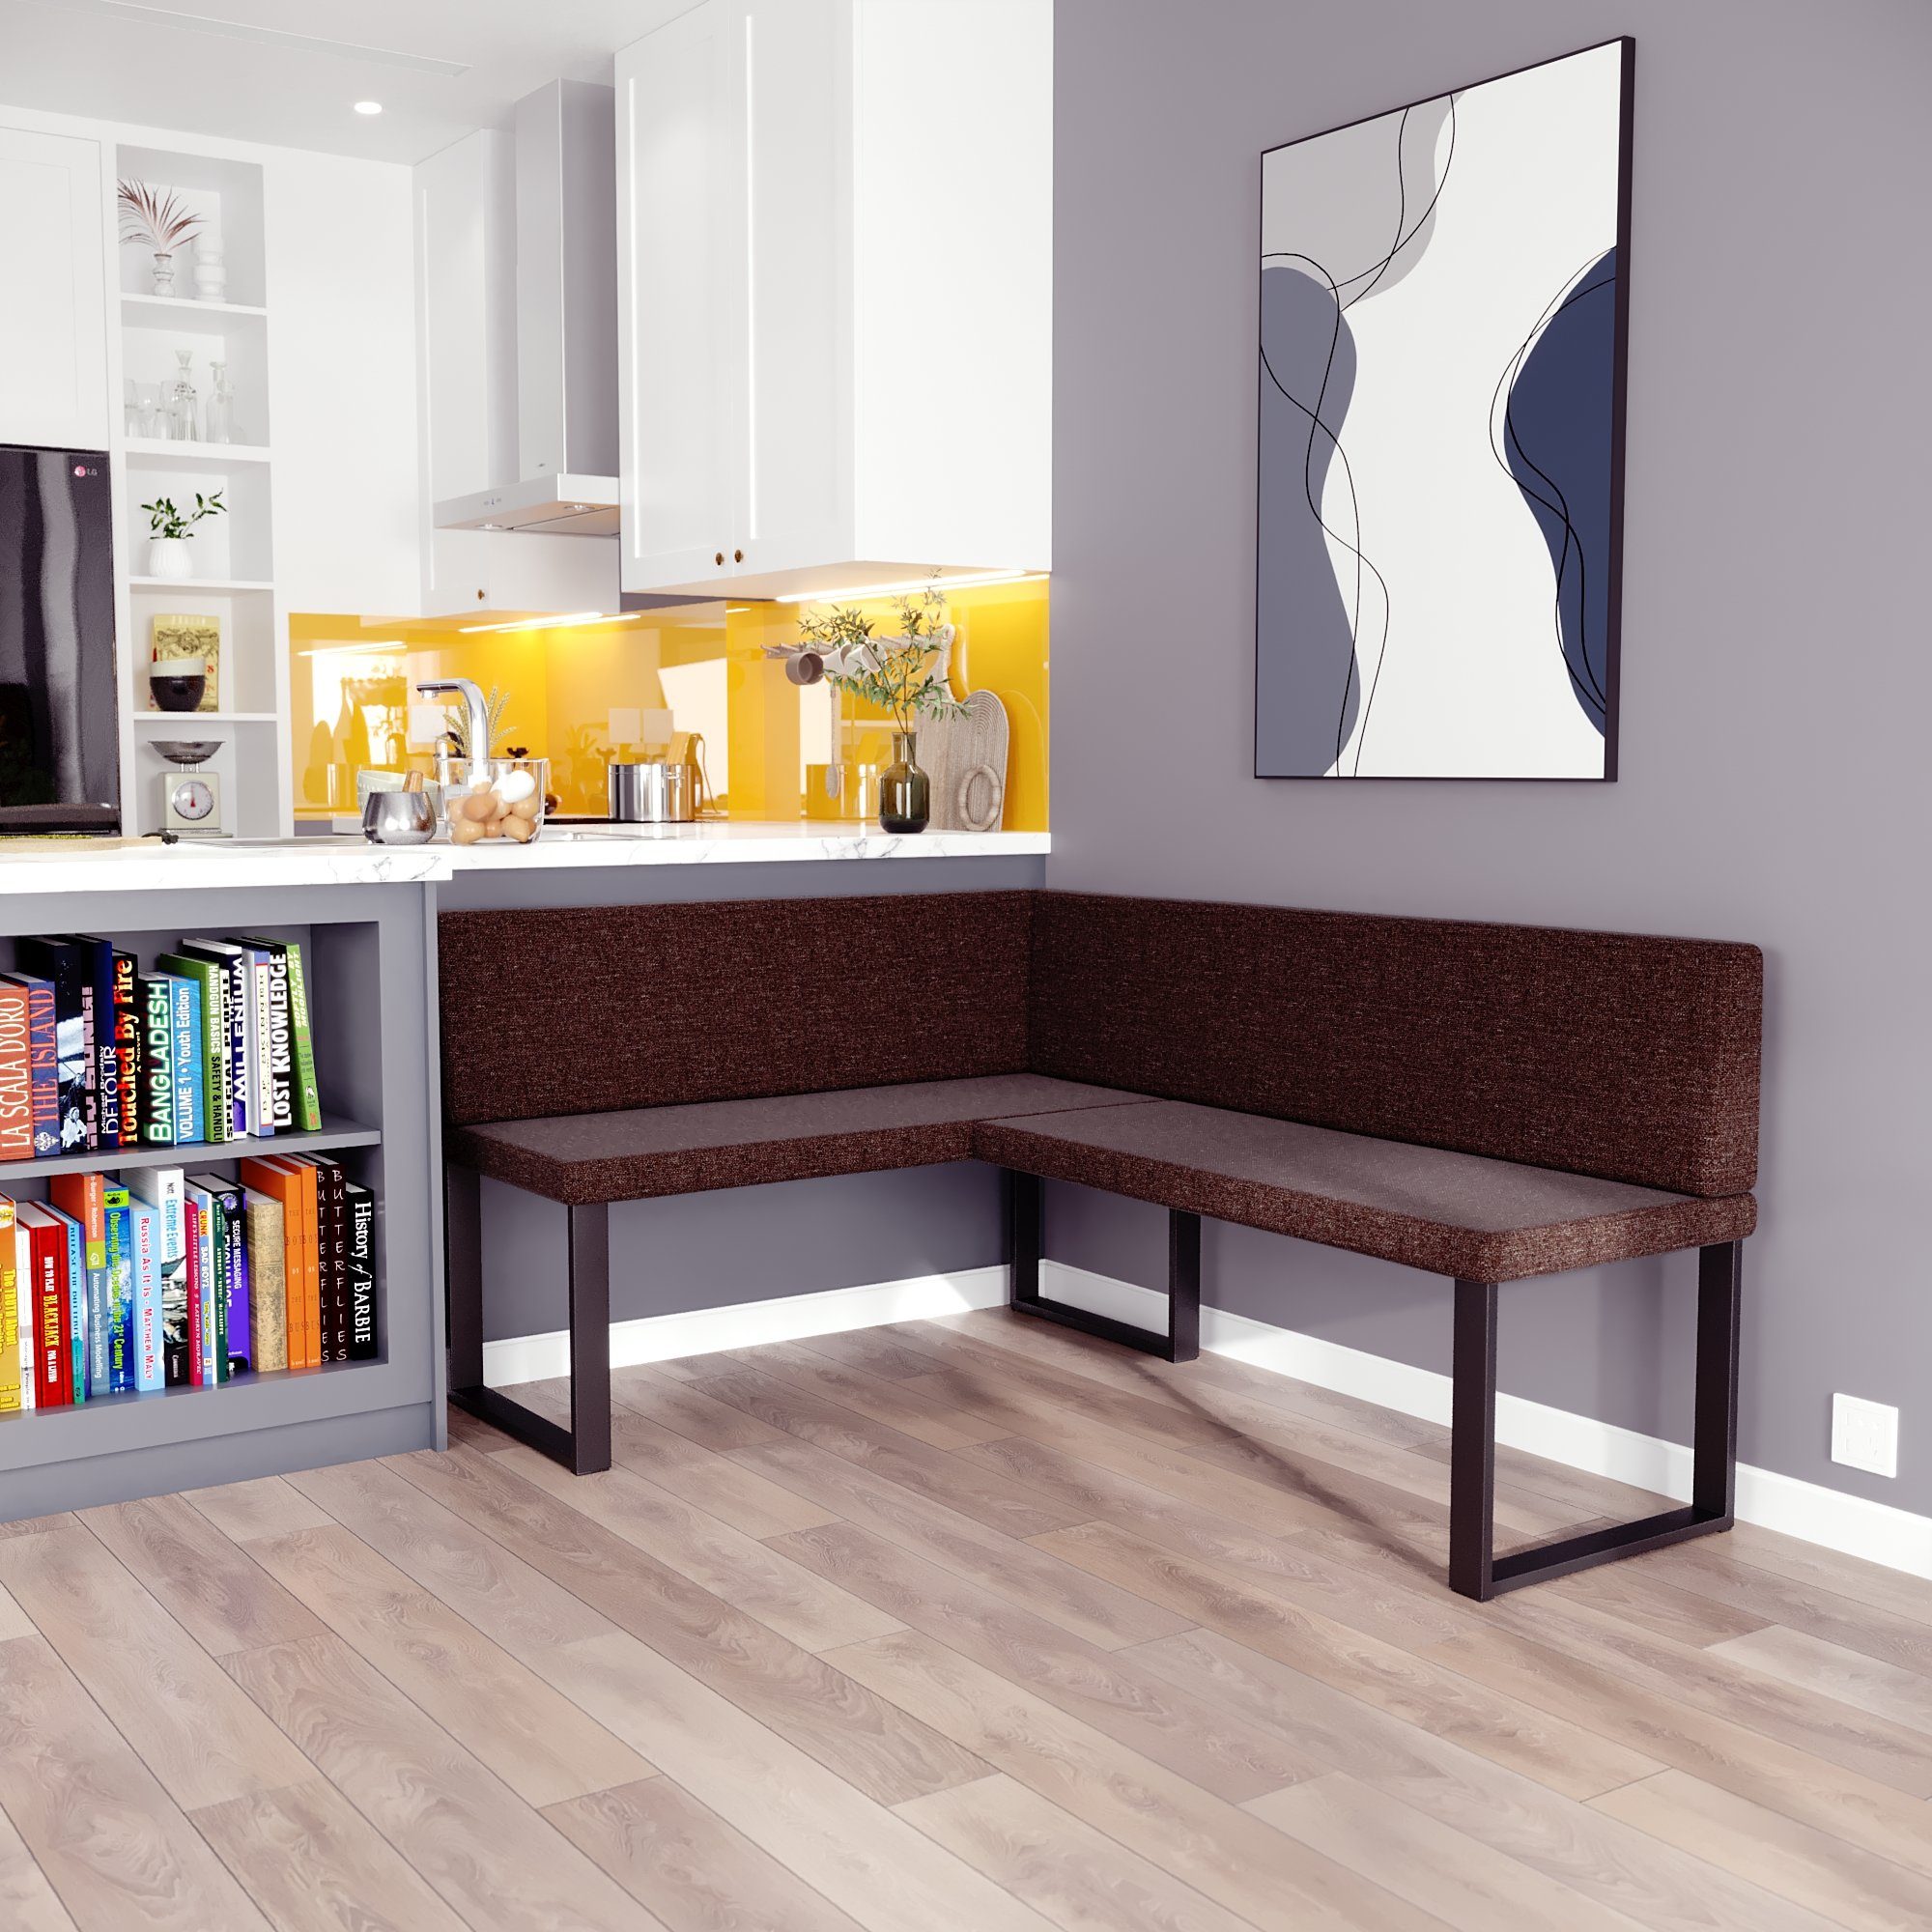 sofa4you Eckbank ALINA Metall, perfekt für Küche, Esszimmer, Wohnzimmer. Zwei Größen 128x168/142x196 braun